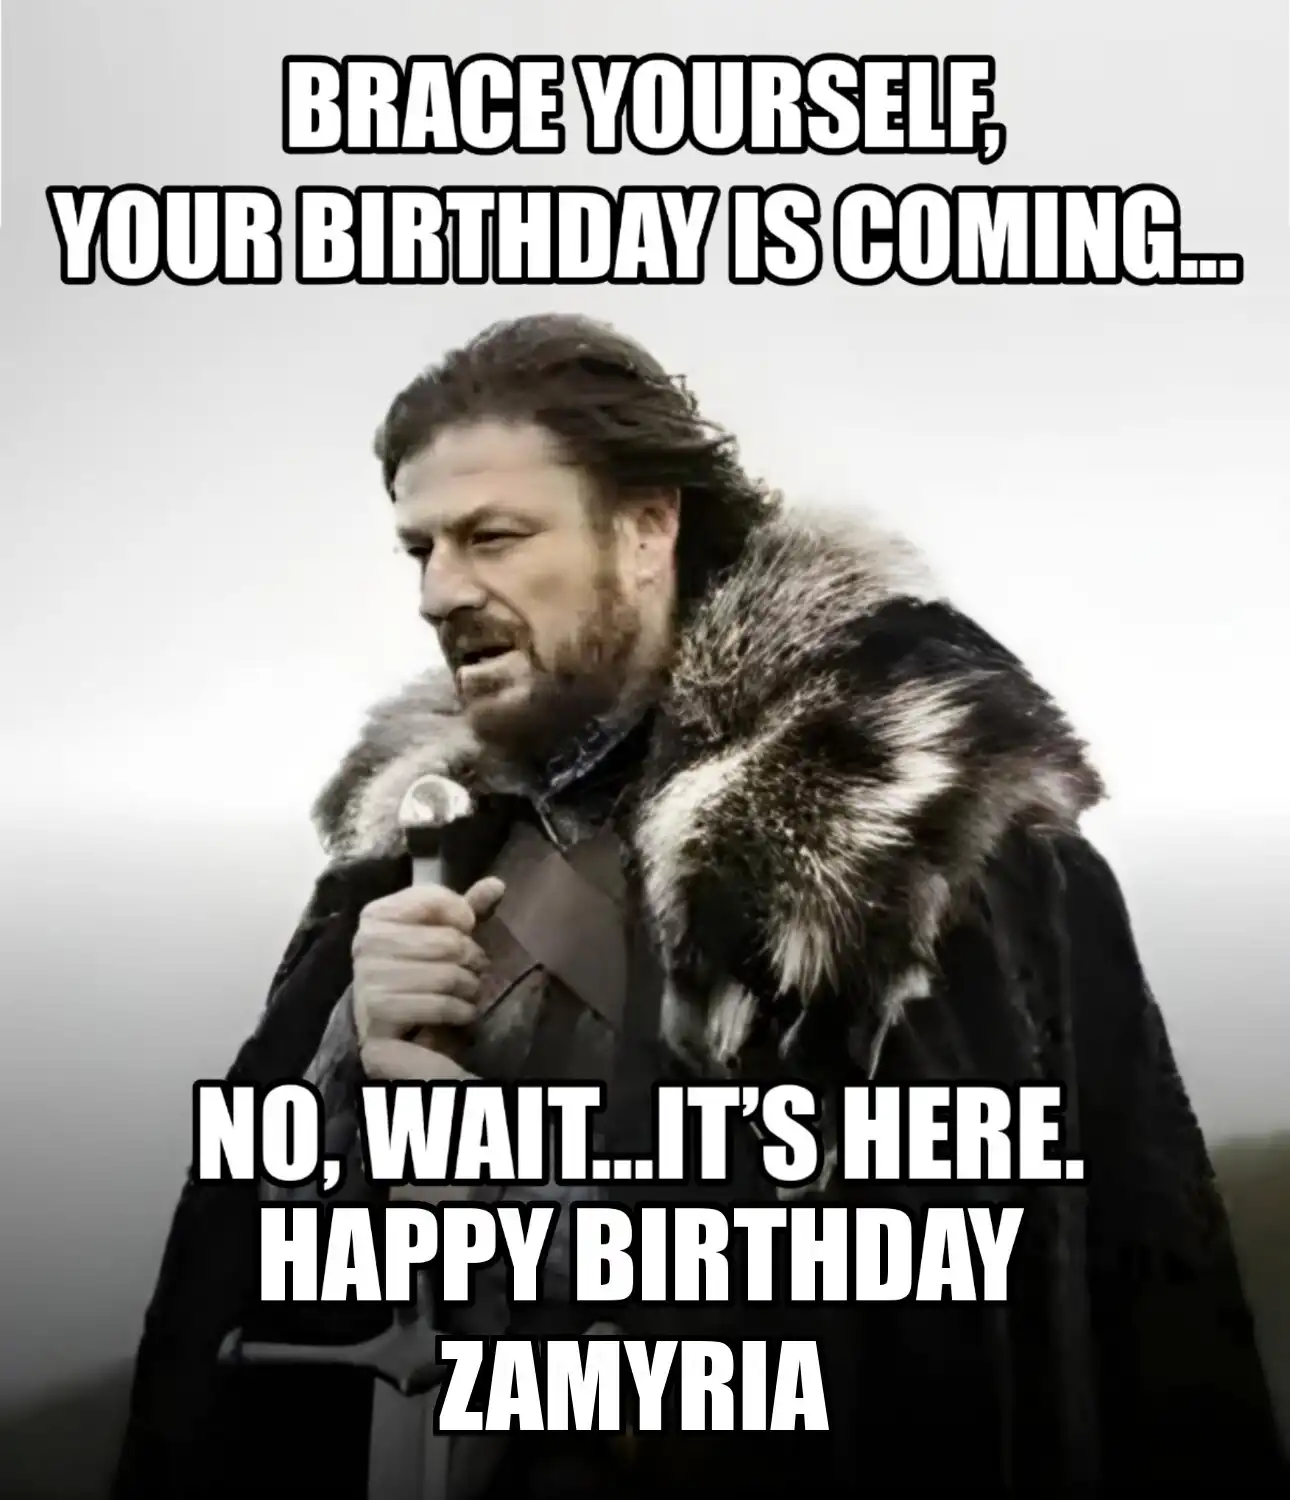 Happy Birthday Zamyria Brace Yourself Your Birthday Is Coming Meme